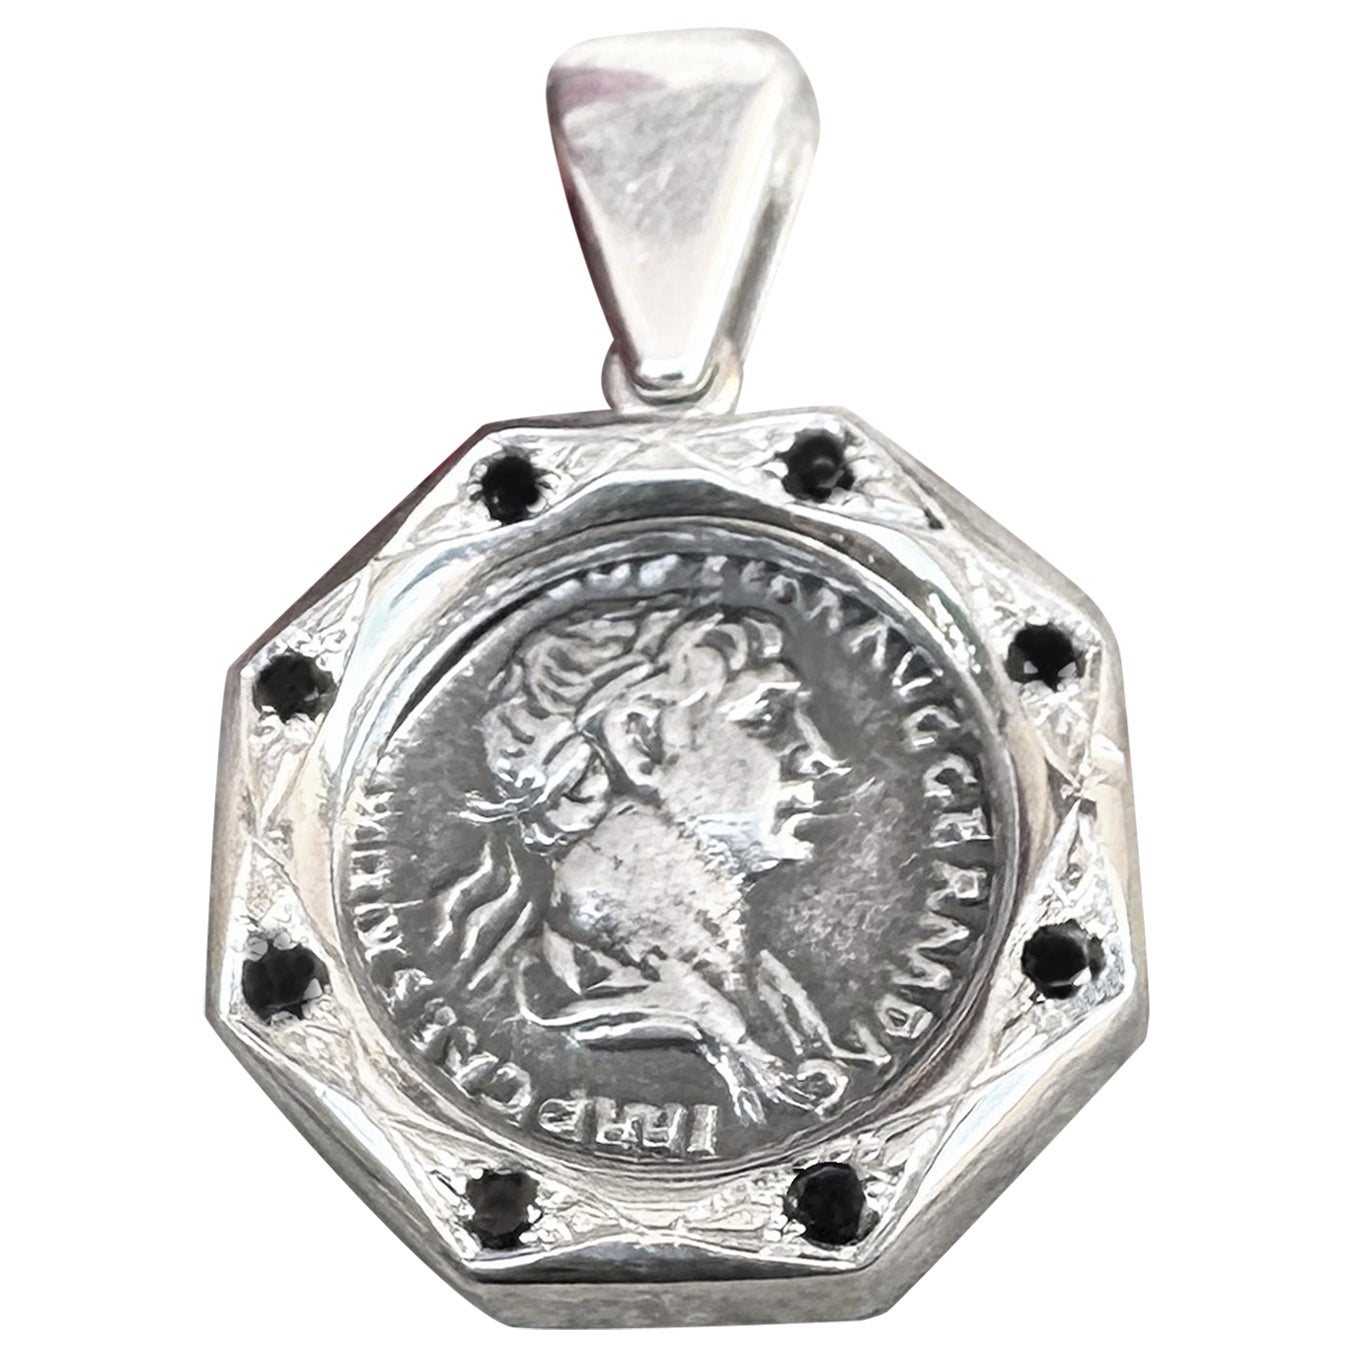 Dieser exquisite Silberanhänger zeigt eine echte römische Silberdenar-Münze aus dem 2. Jahrhundert n. Chr., die auf der Vorderseite Kaiser Trajan und auf der Rückseite den Gott Mars abbildet. Der Anhänger ist mit 8 schwarzen Diamanten 0,30 KT